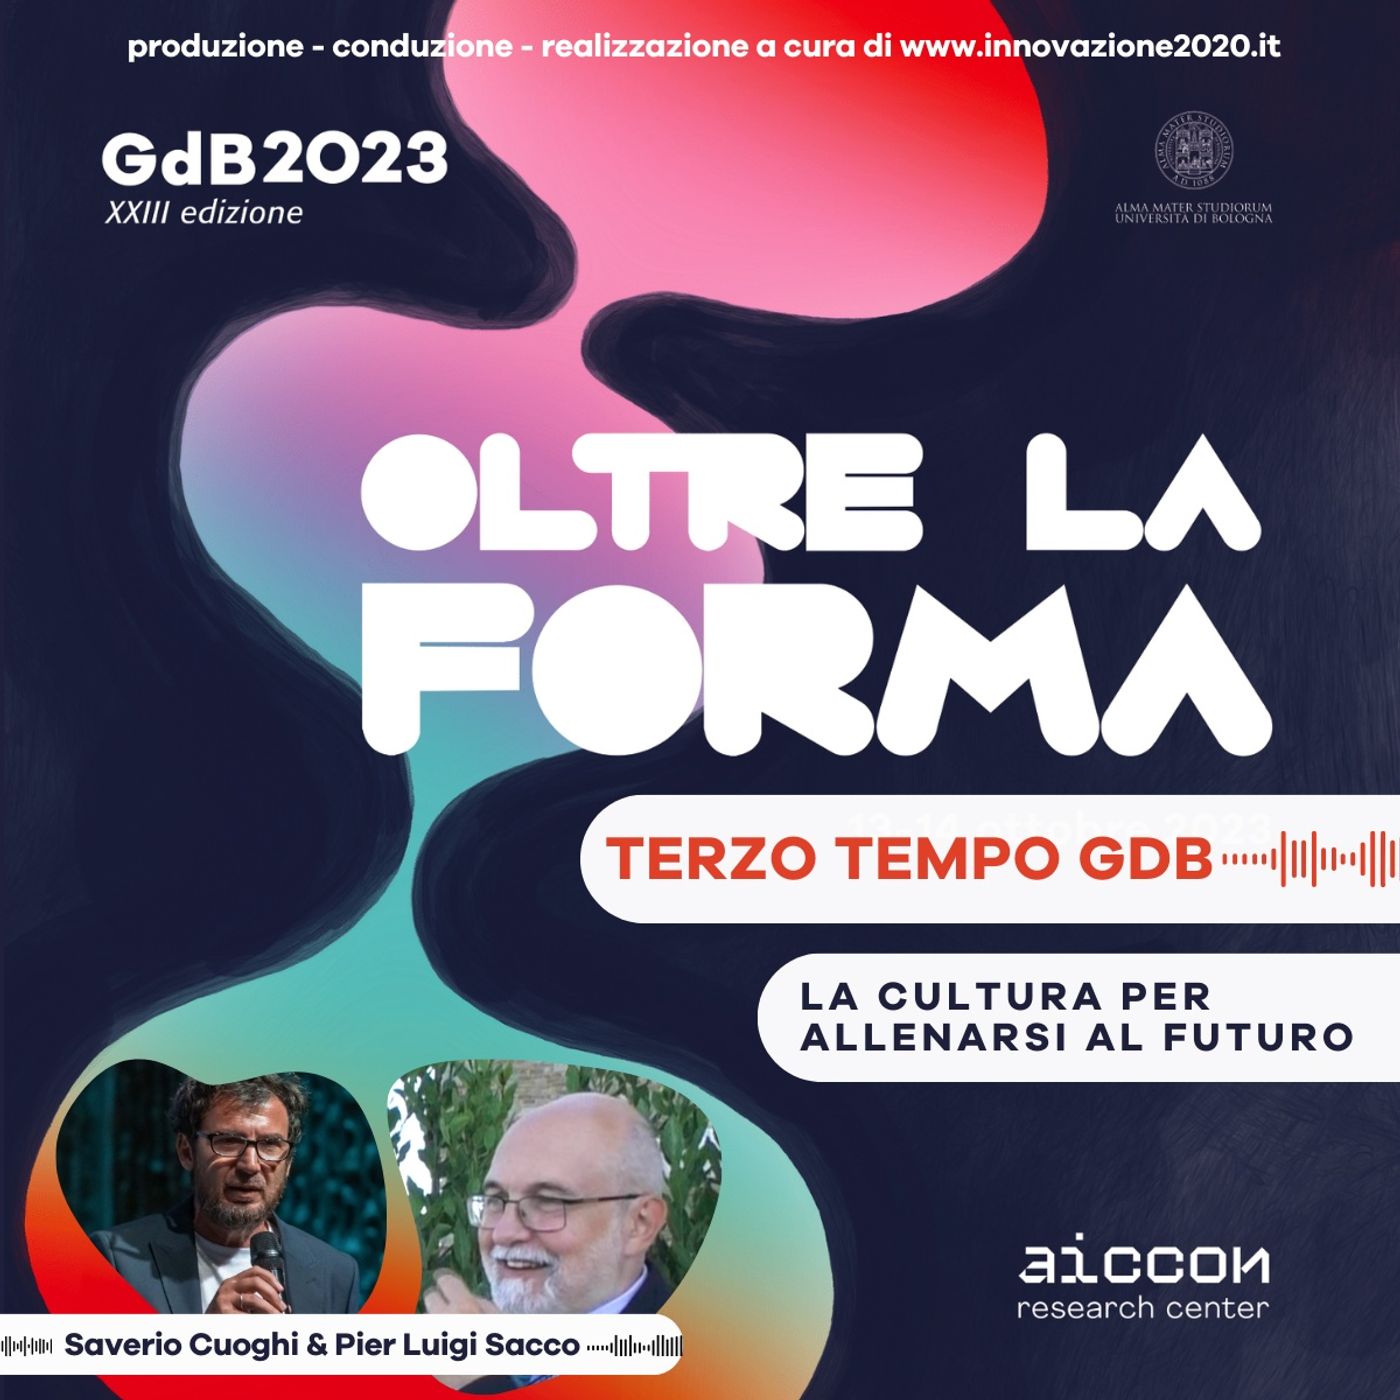 TerzoTempo GDB23 - Pier Luigi Sacco - La Cultura per allenarsi al futuro